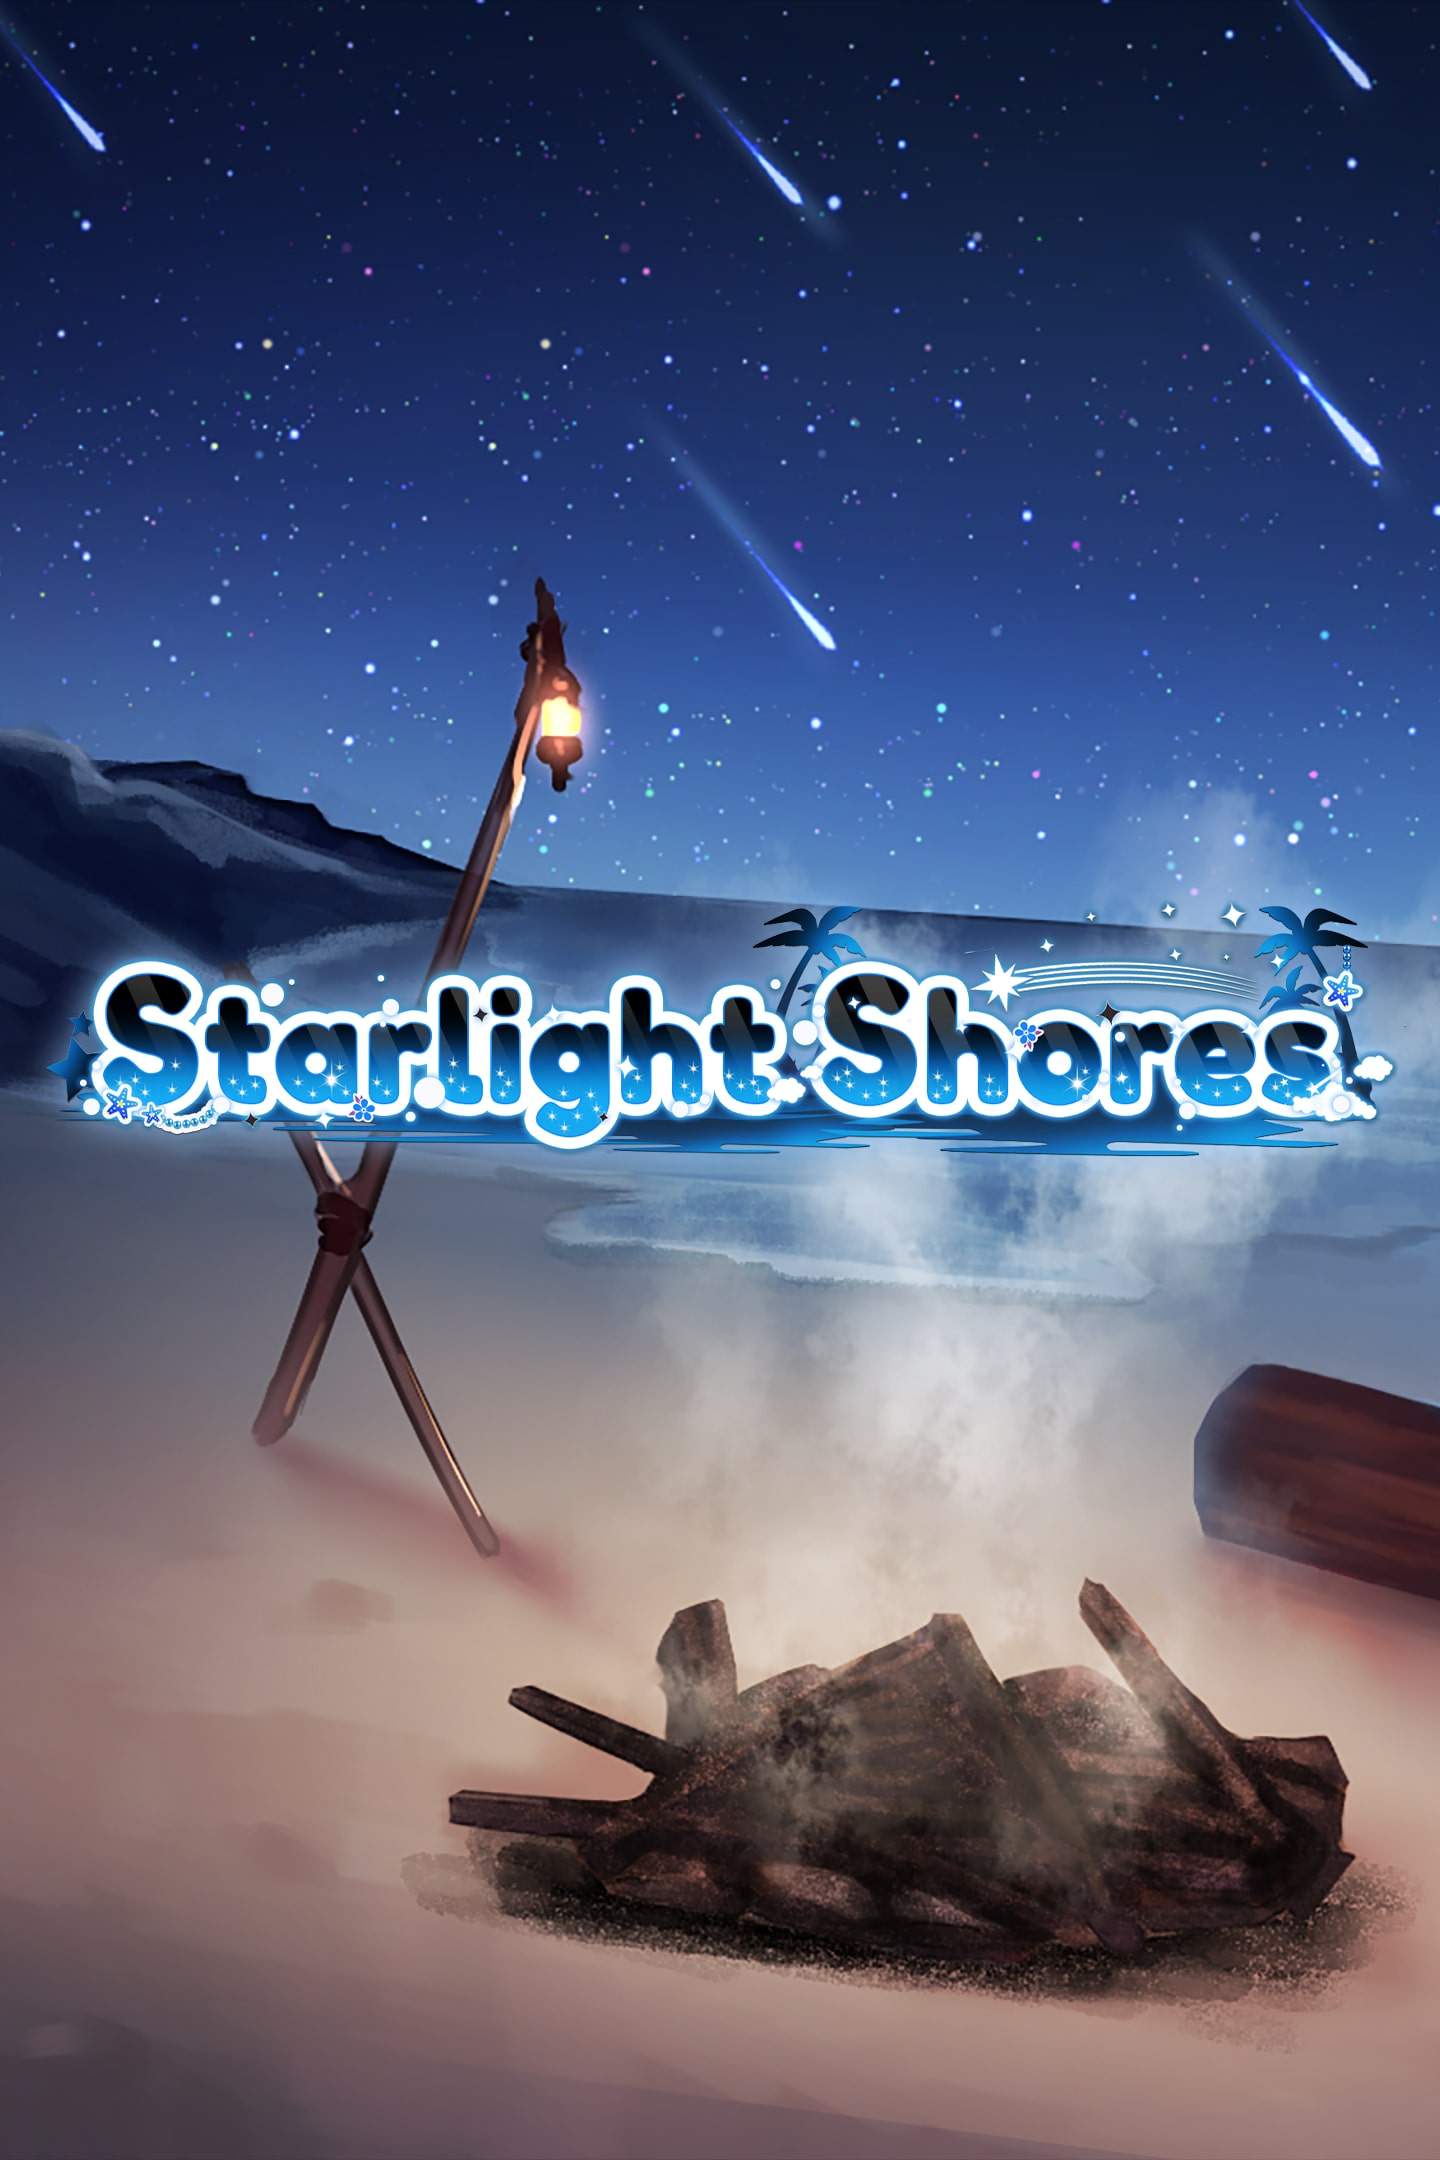 jaquette du jeu vidéo Starlight shores